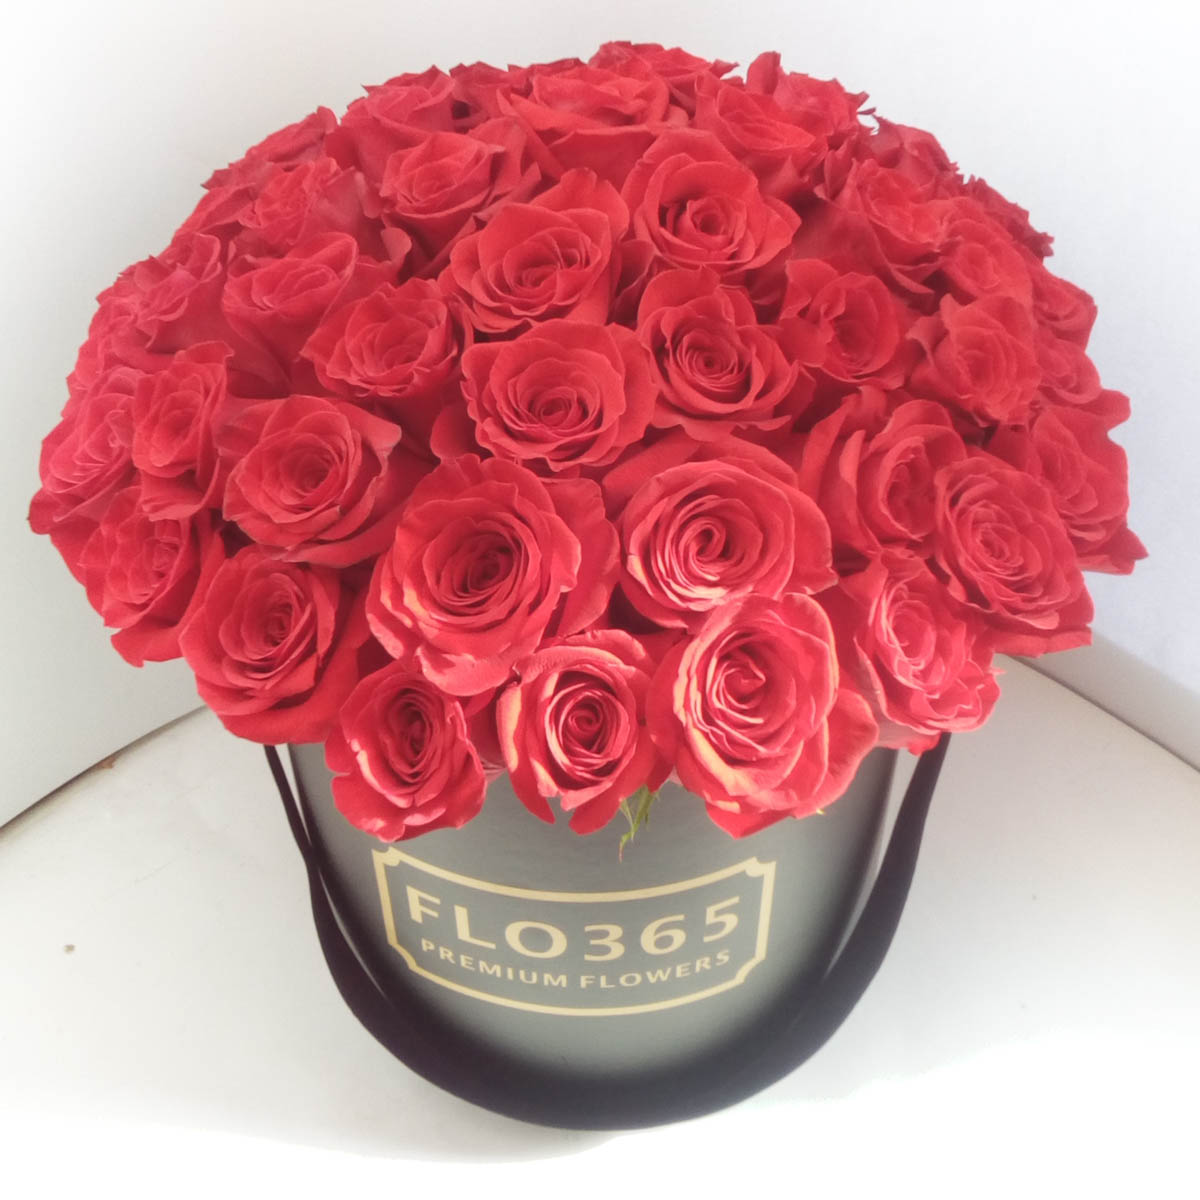 LUXURY! 51 красная роза в шляпной коробке - Фотография цветов перед доставкой 3